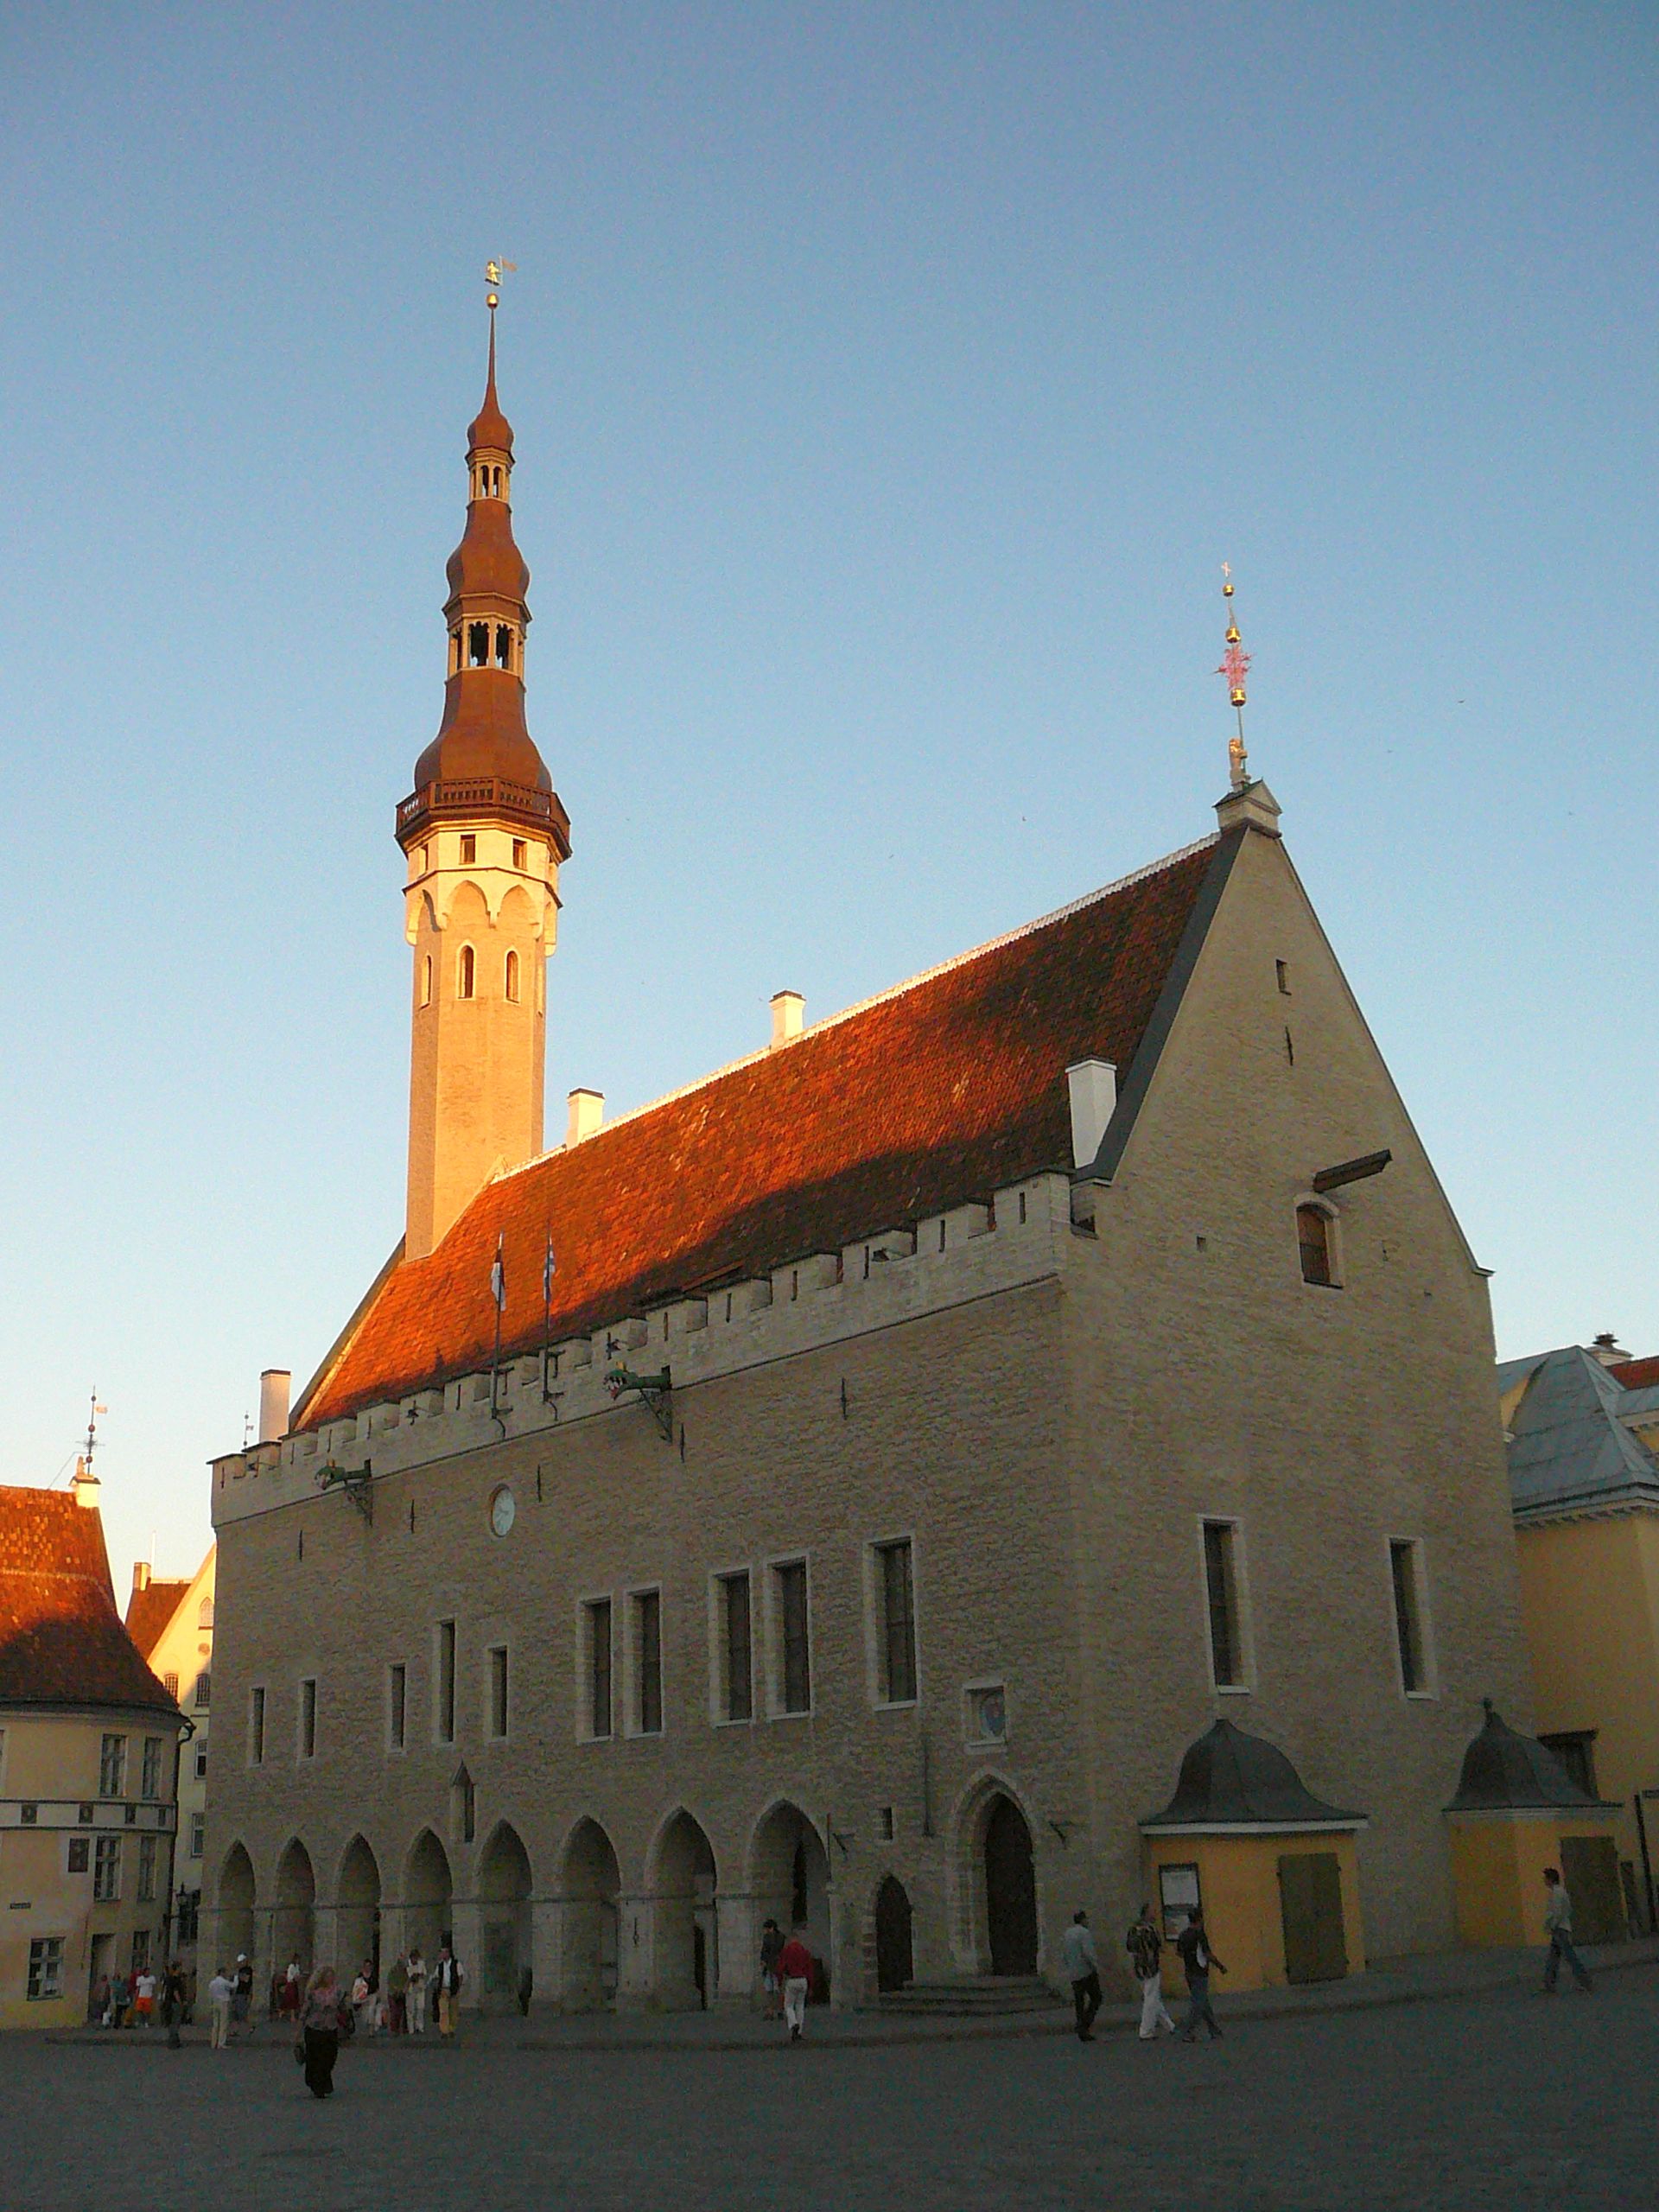 The Tallinn City Hall